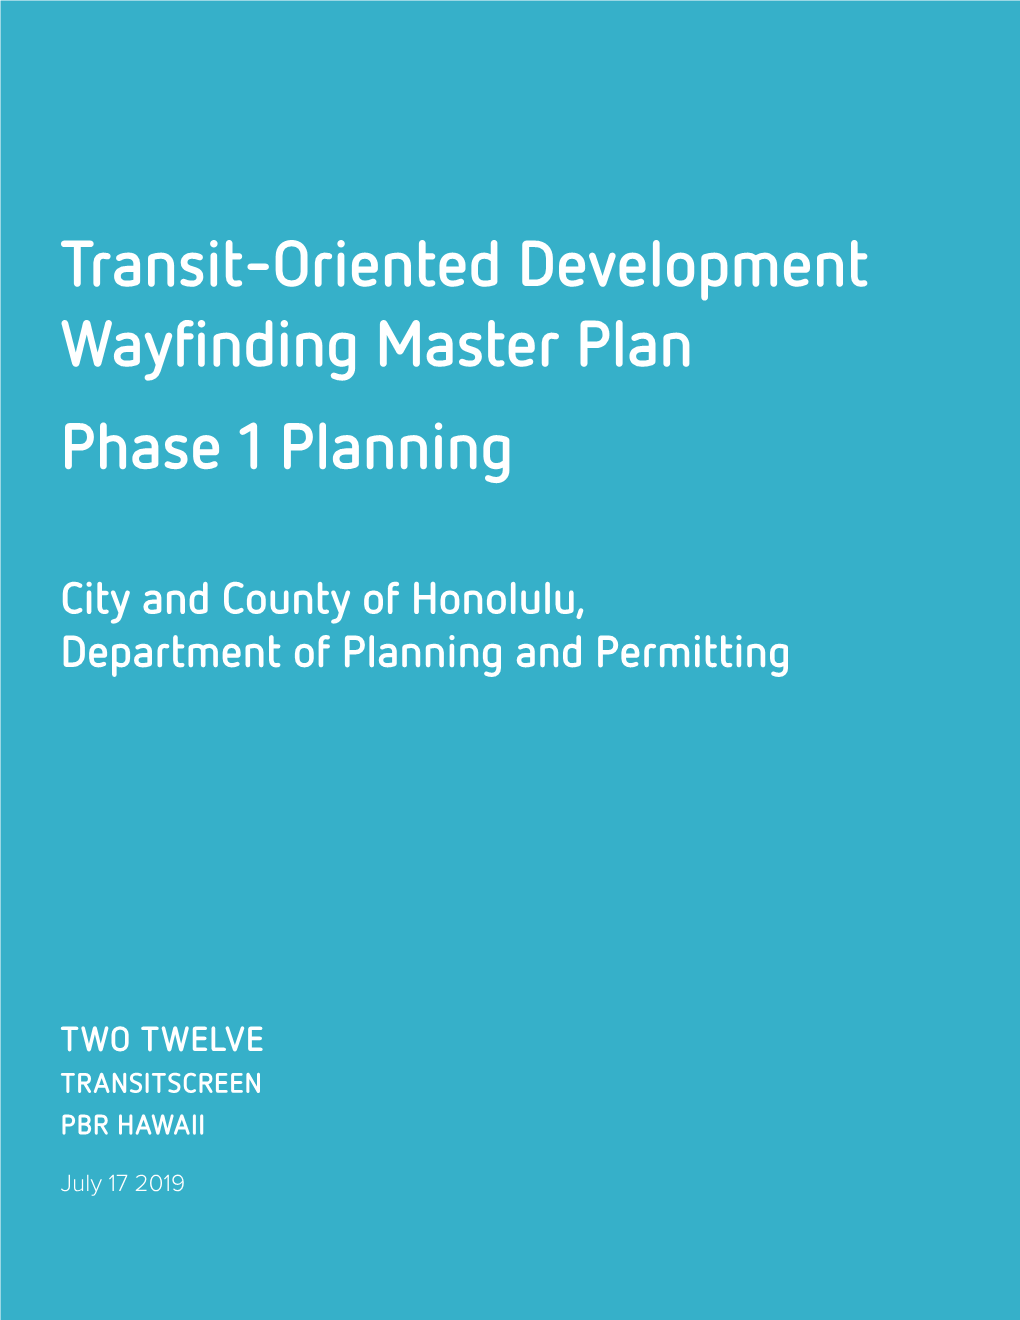 Transit-Oriented Development Wayfinding Master Plan Phase 1 Planning